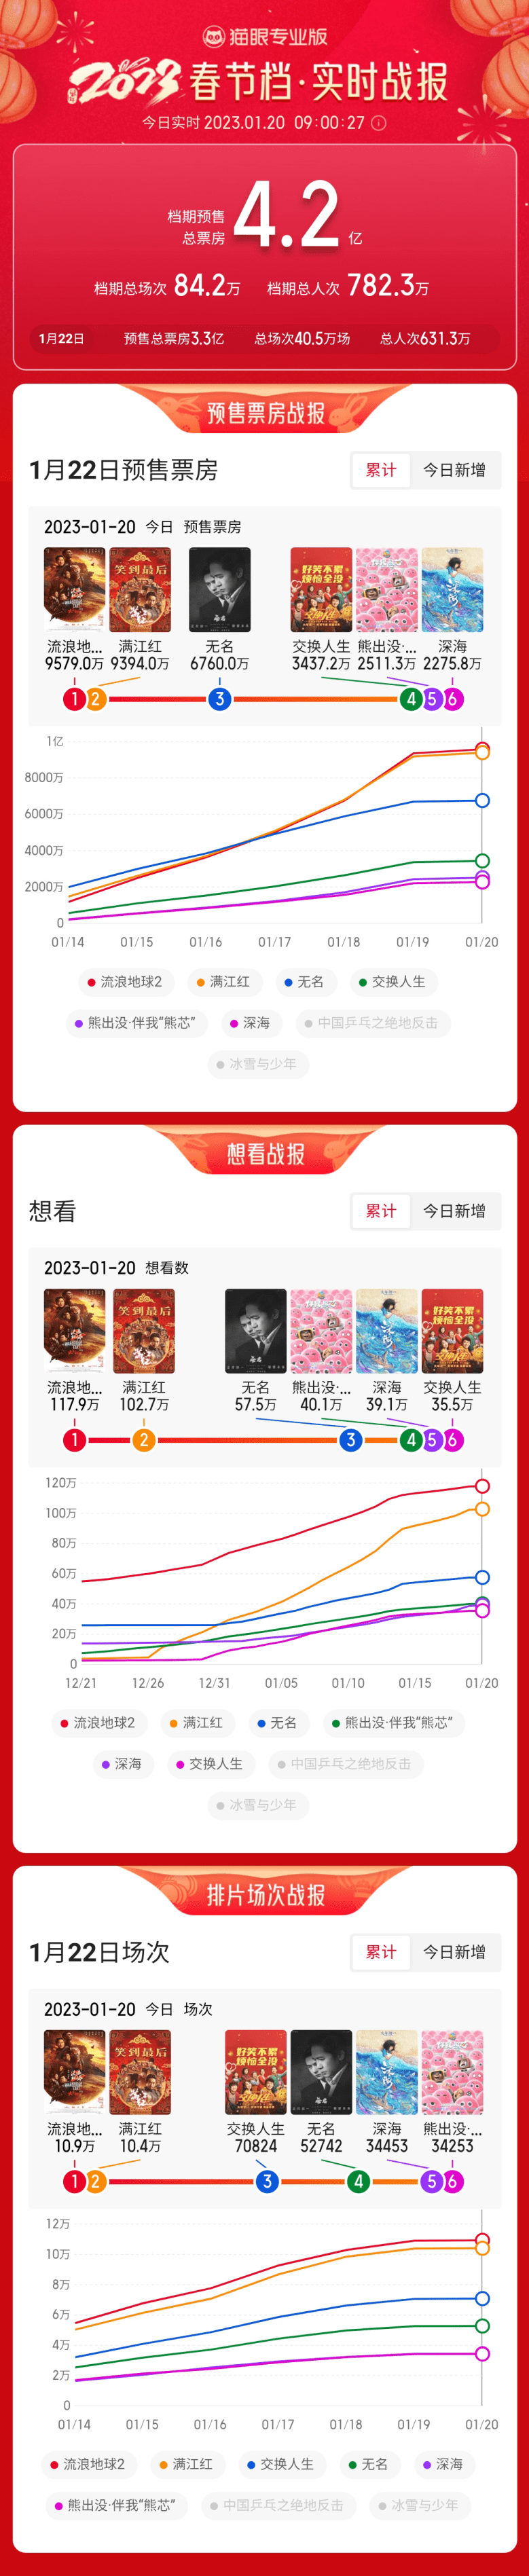 2023春节档三强领跑预售榜，预售票房冲破4亿大关